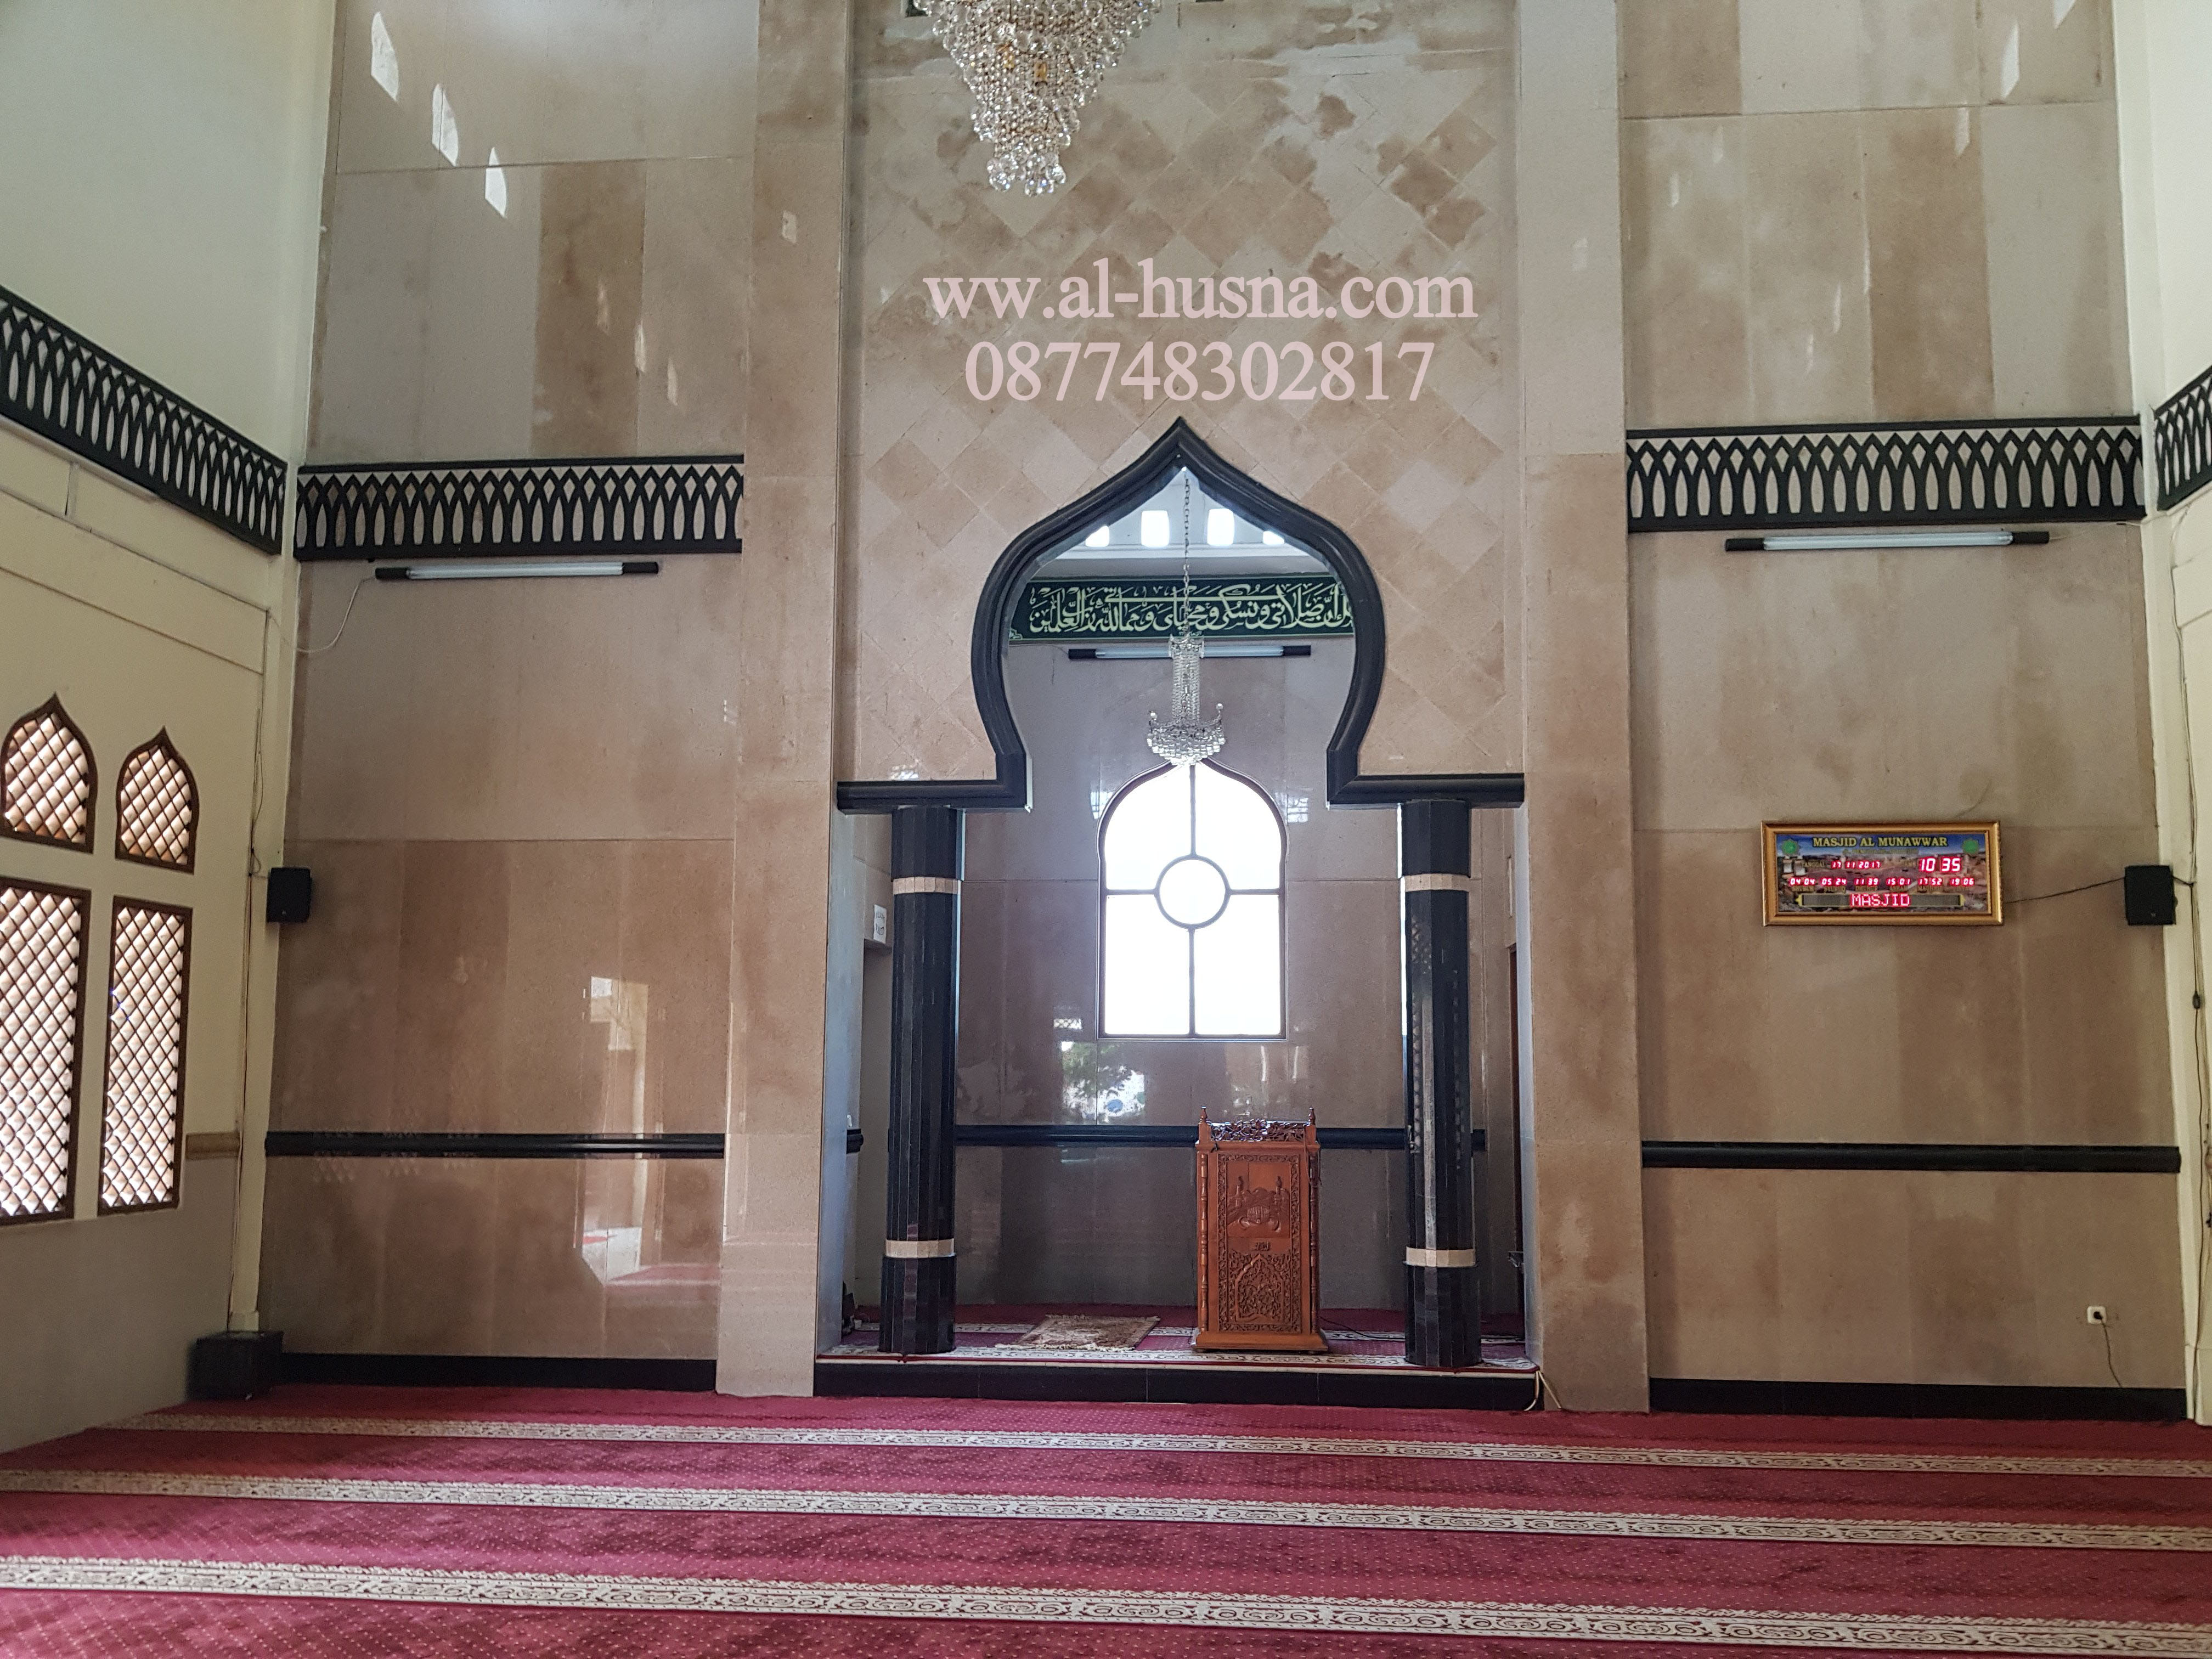 Daftar Harga Karpet Masjid Di Sukamukti-